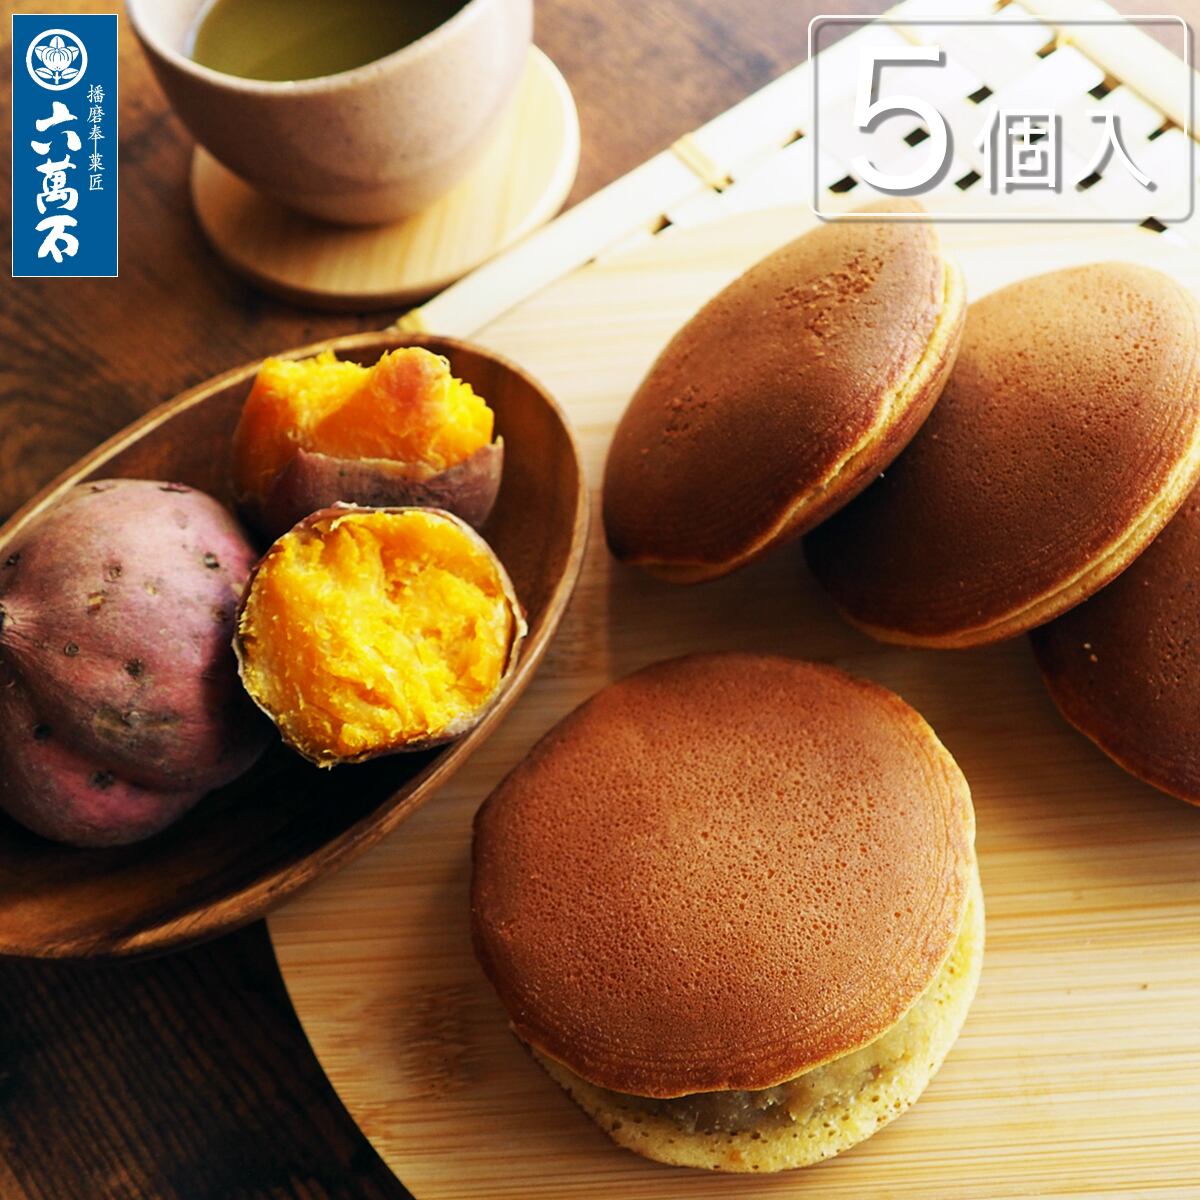 【秋限定】秋づくし -安納芋どら焼き 5個入 #和菓子#いも#どらやき